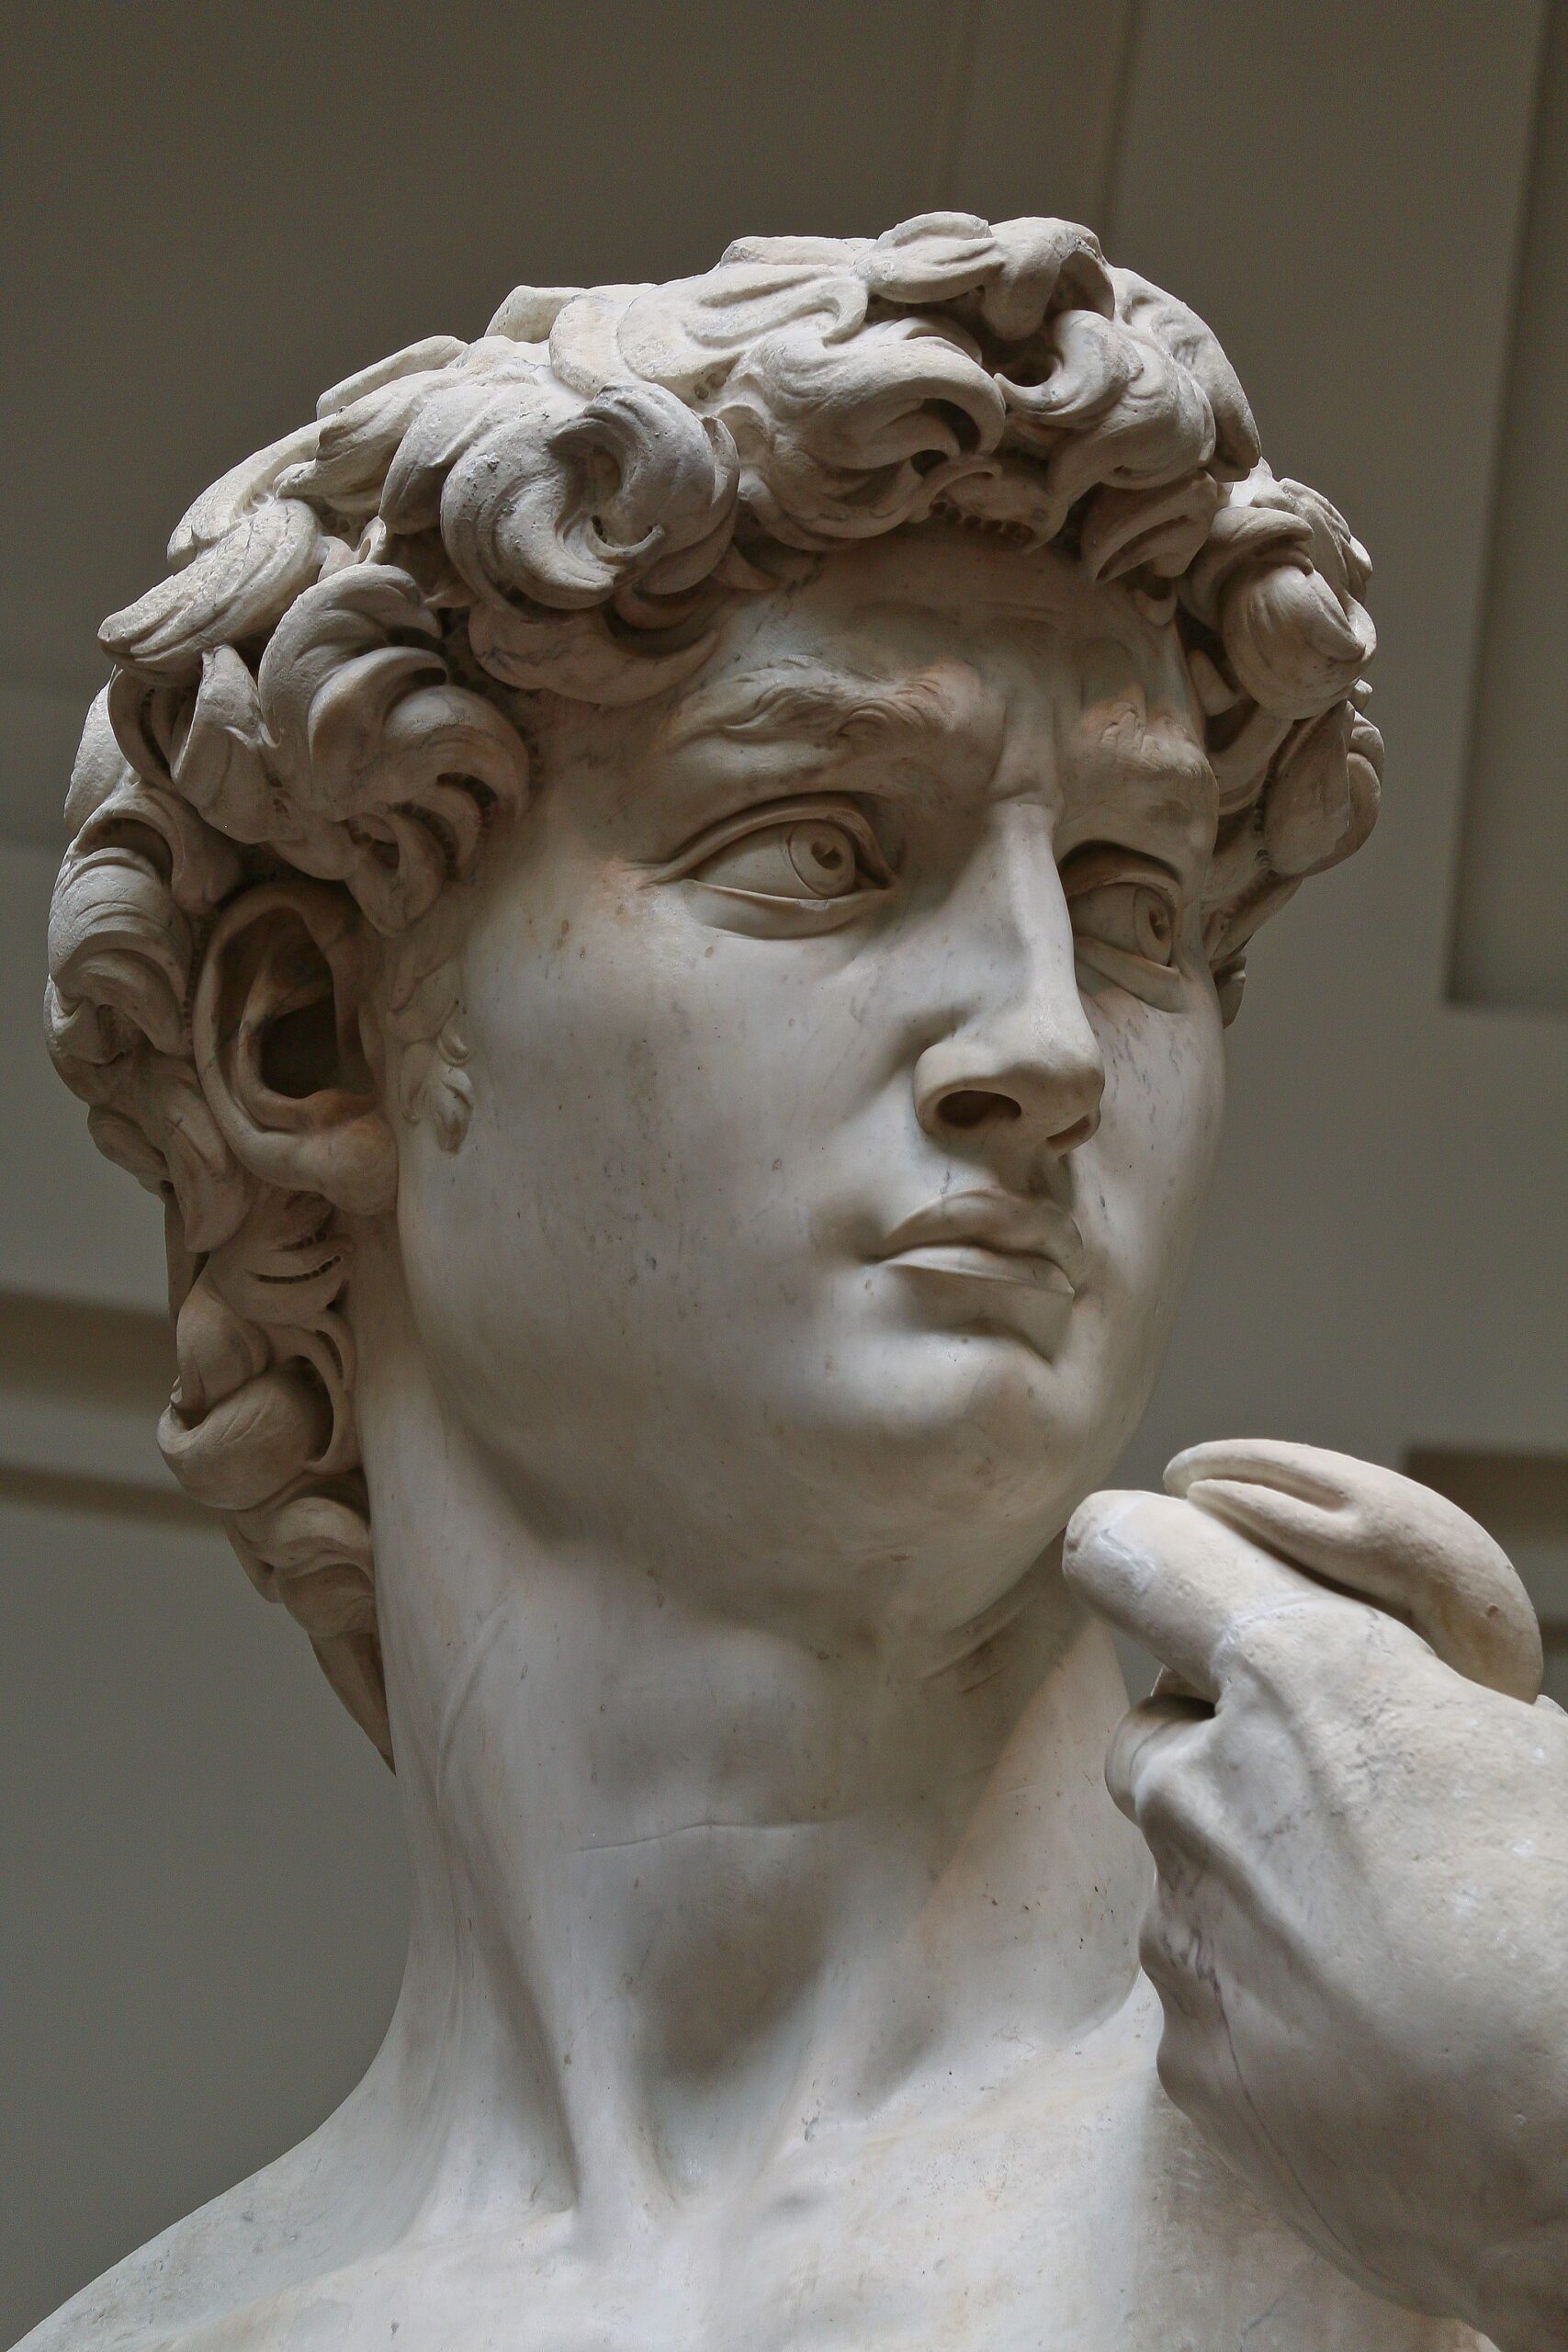 El David de Miguel Ángel: una de las esculturas más sorprendentes de la historia del arte